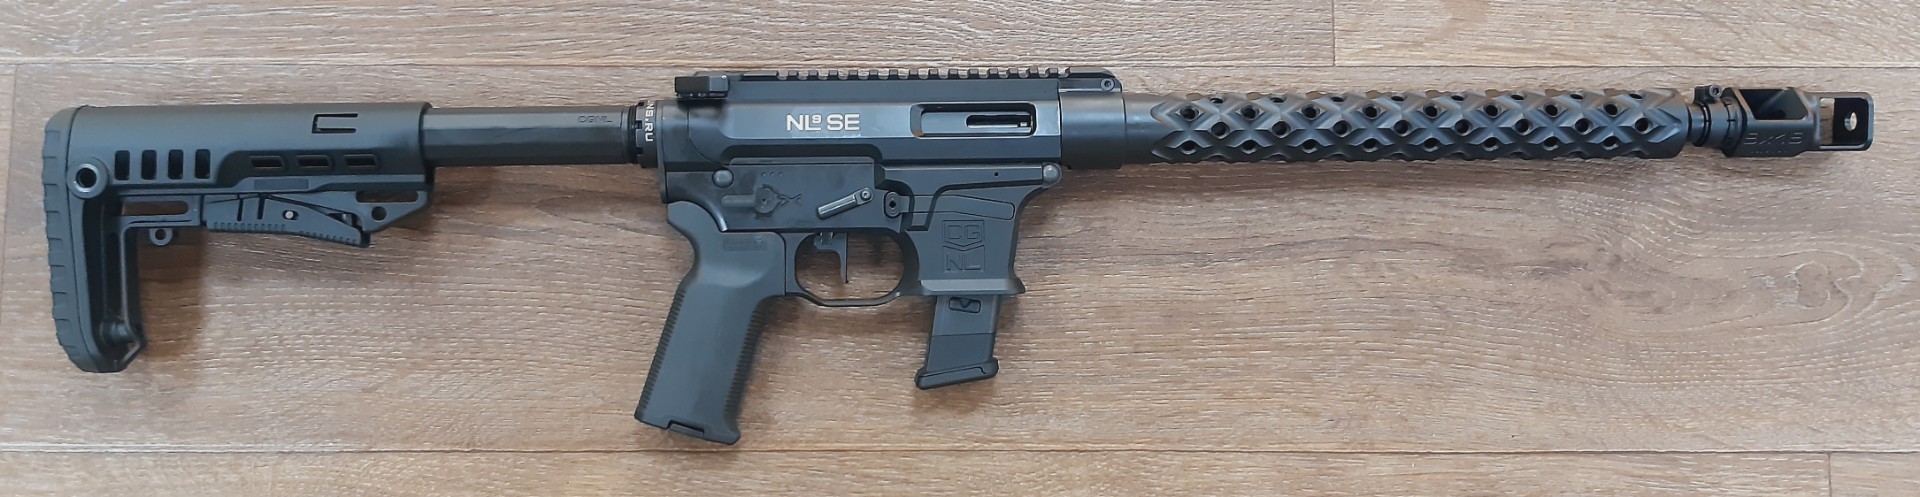 ADAR 1-9 NL9 SE 9x19 Luger 14